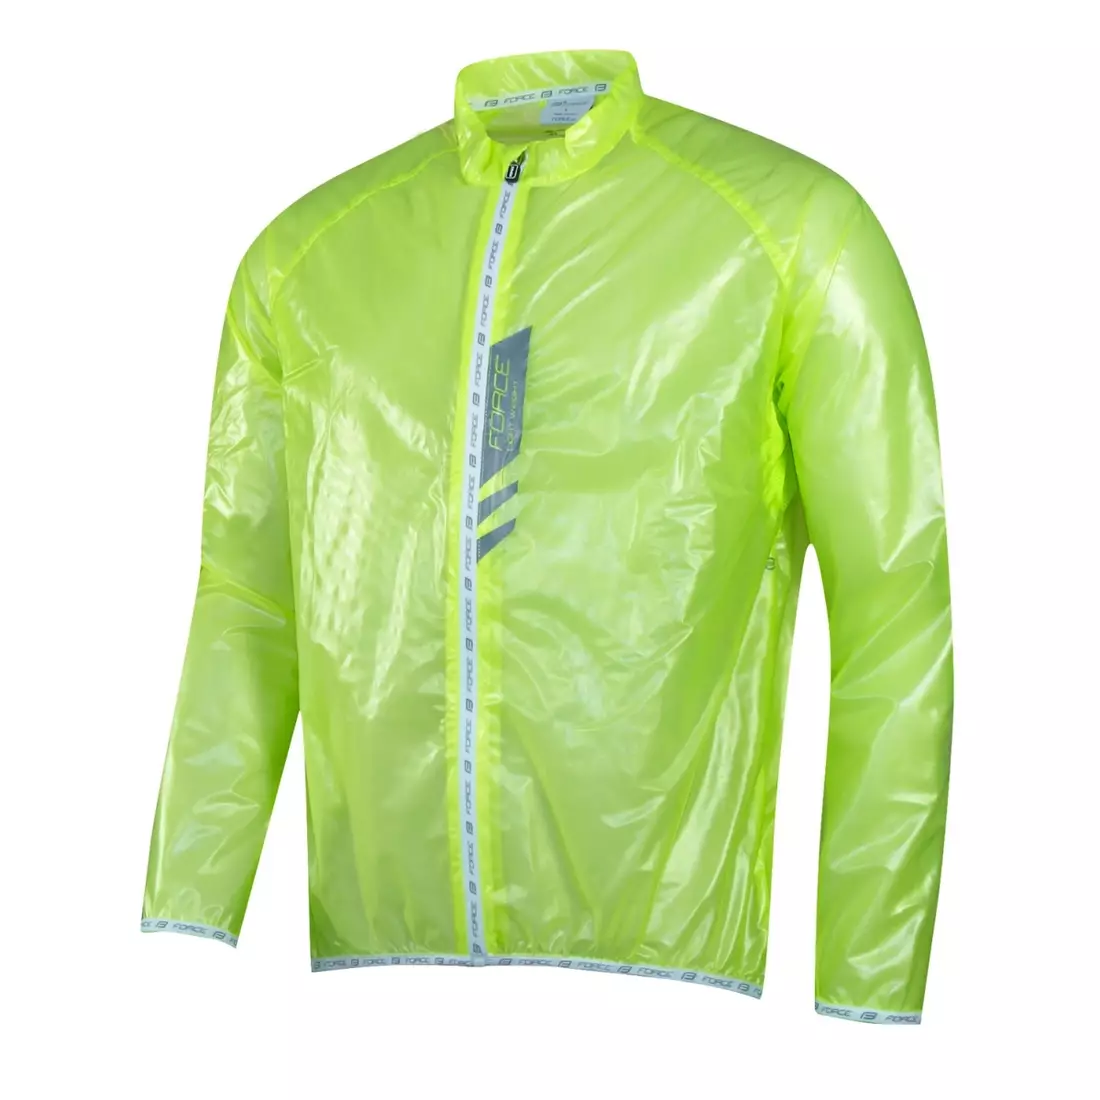 FORCE SLIM pánska cyklistická bunda do dažďa, žltý fluór